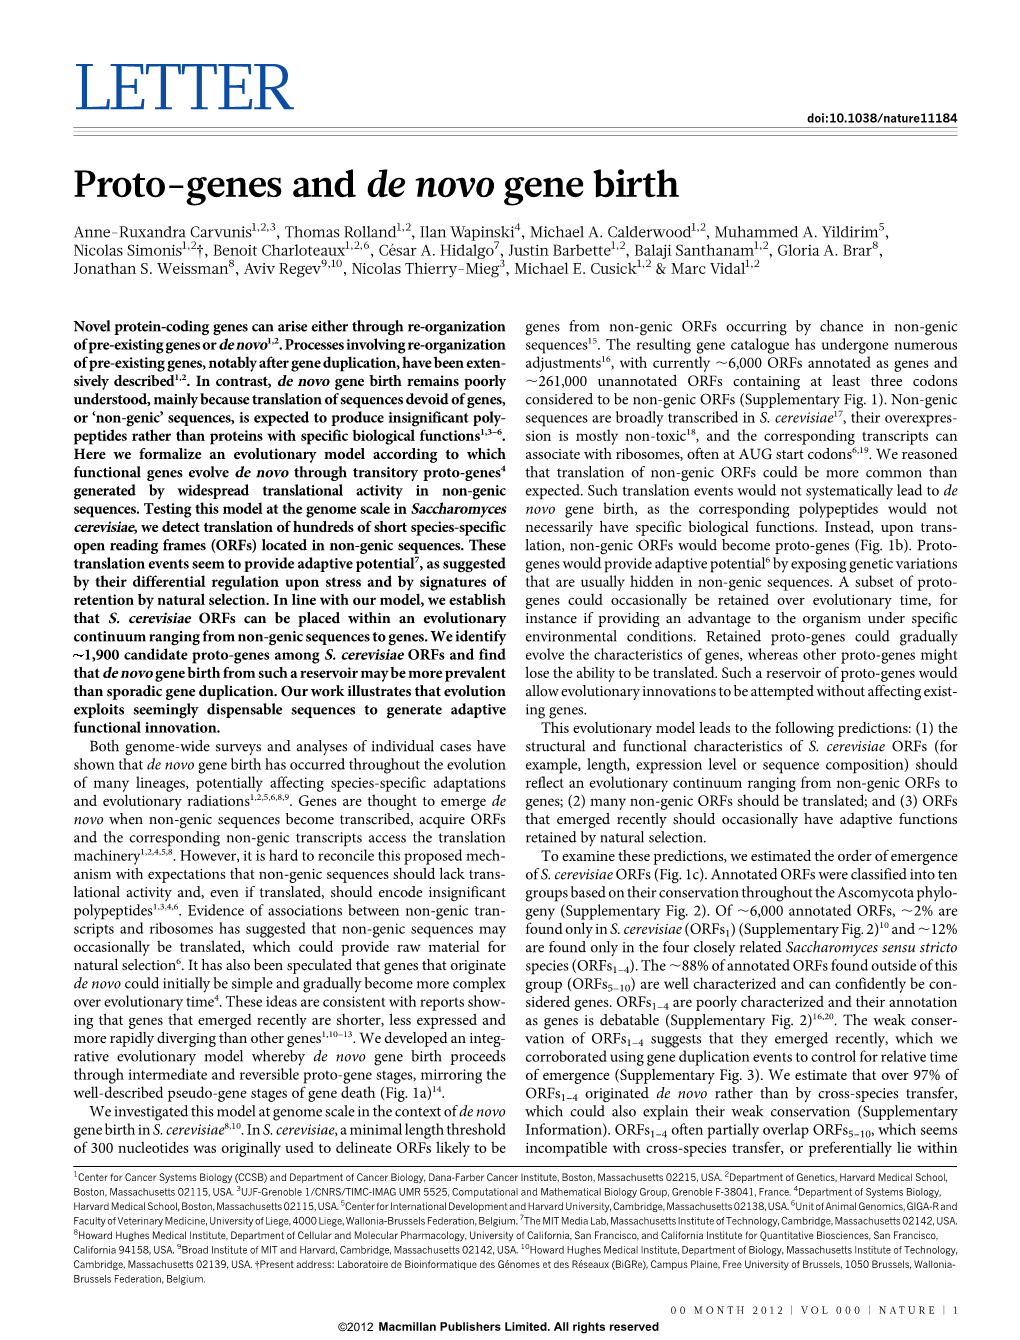 Proto-Genes and De Novo Gene Birth